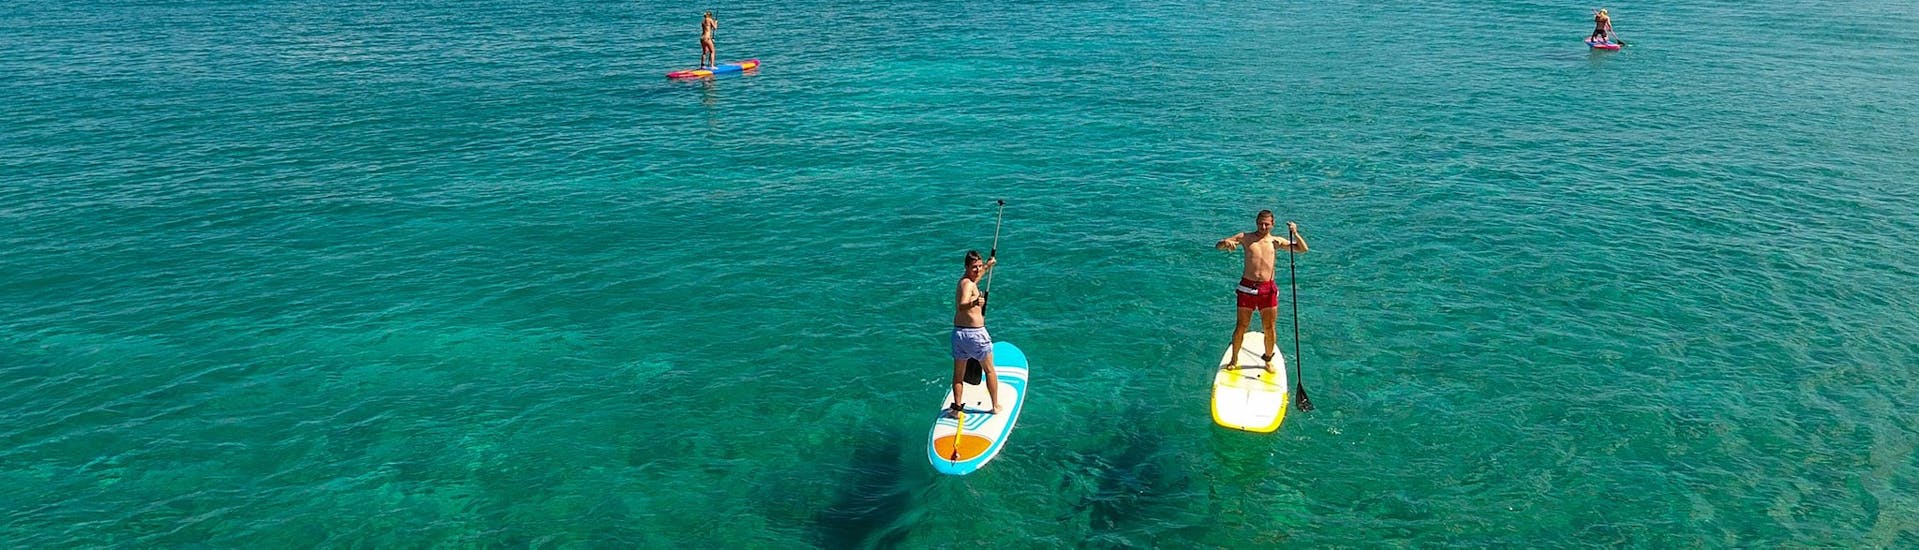 Location de stand up paddle à Paradise Beach sur l'île de Kos avec Water Club Paradise Beach Kos.